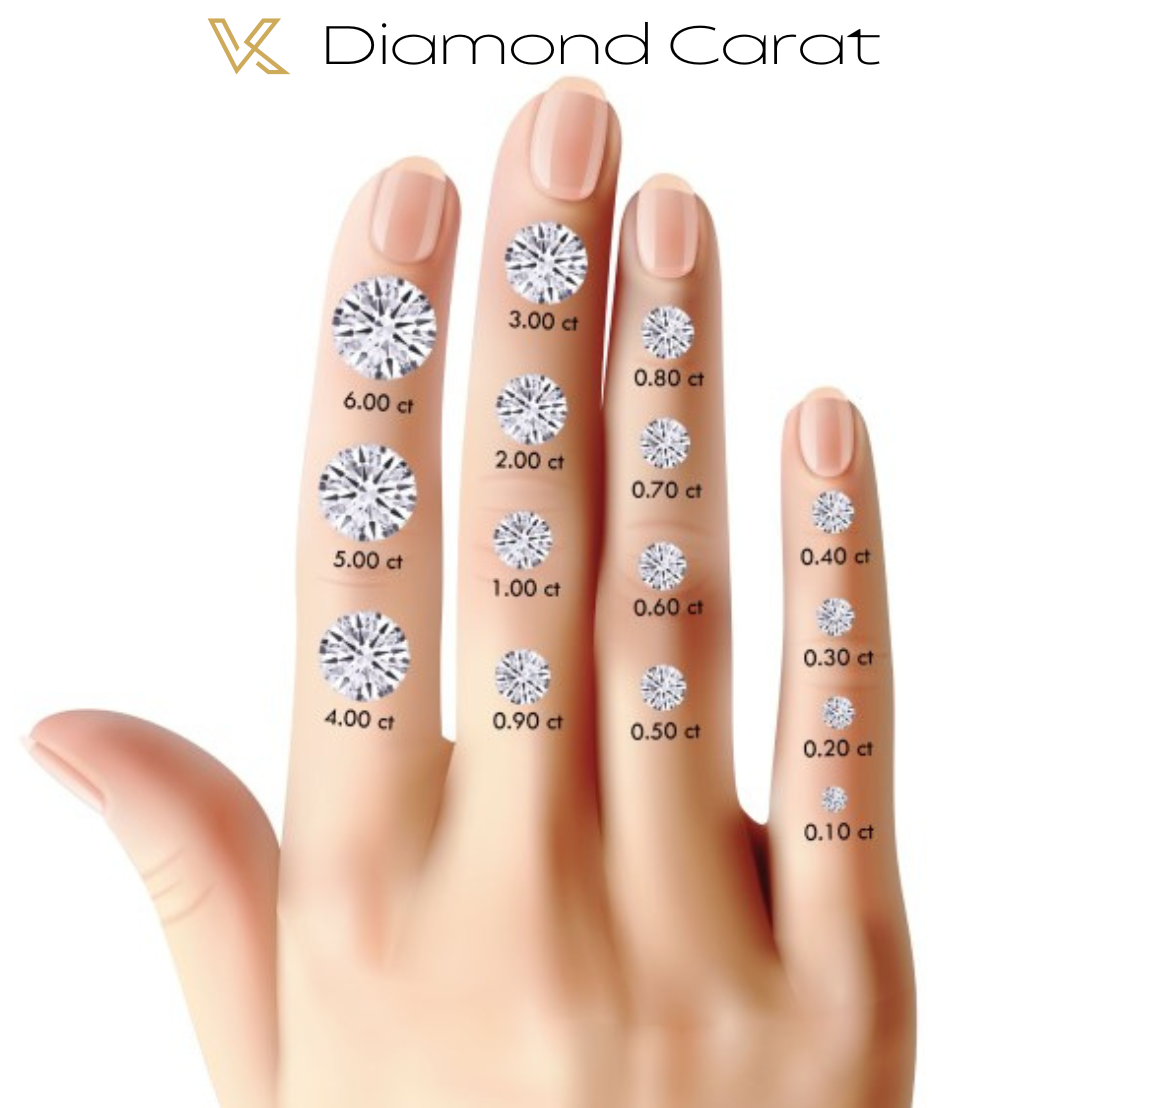 Kaufen Sie losen Diamanten 0,71 Karat. Strahlender Schnitt. D VVS2 – IGI-zertifiziert